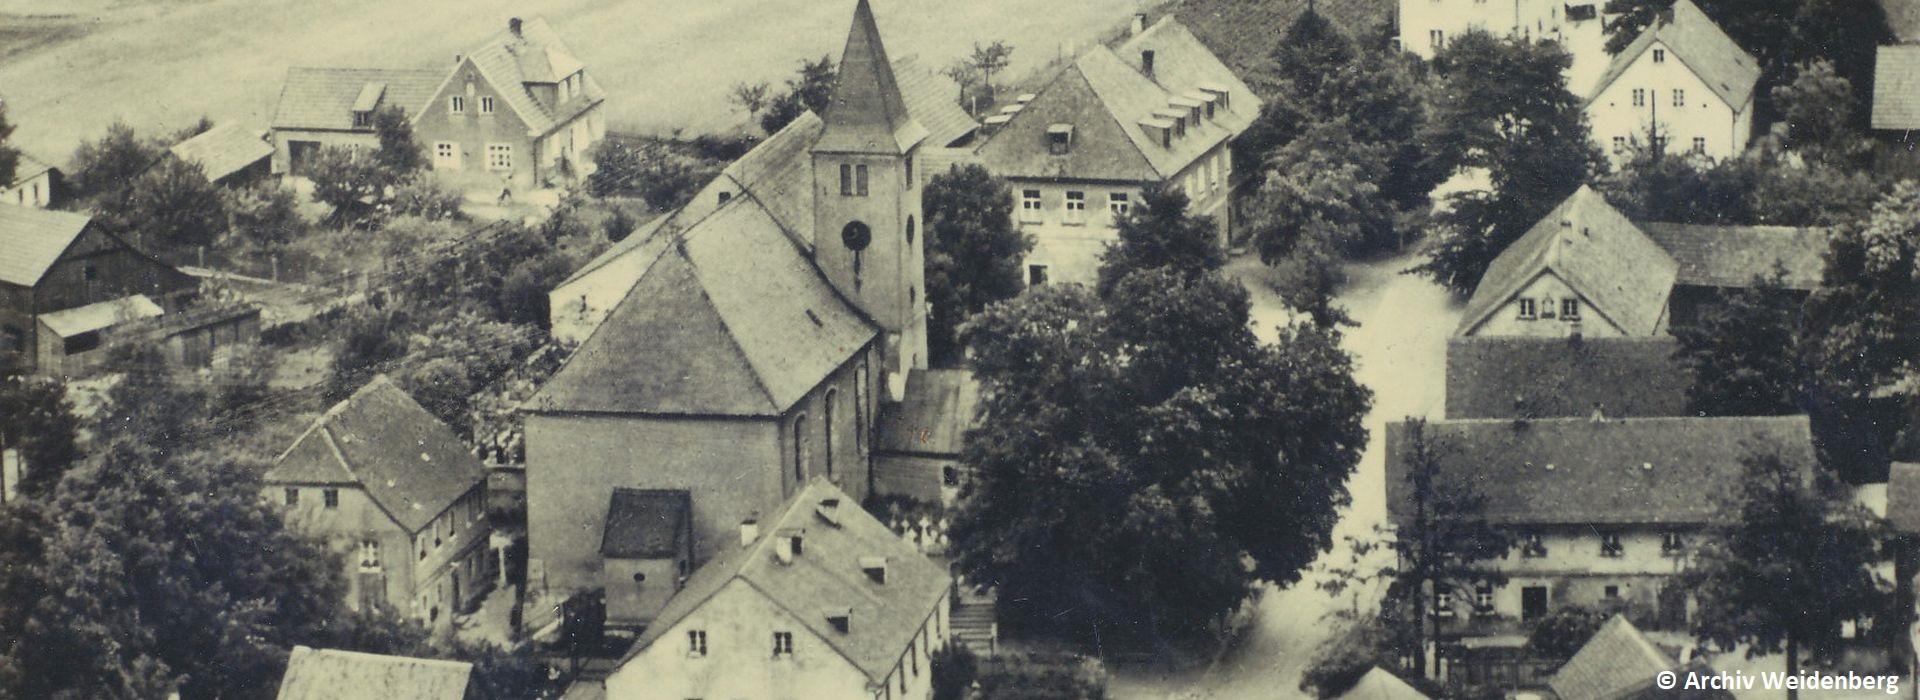 Alte Ortsansicht Kirchenpingarten Foto Archiv Weidenberg